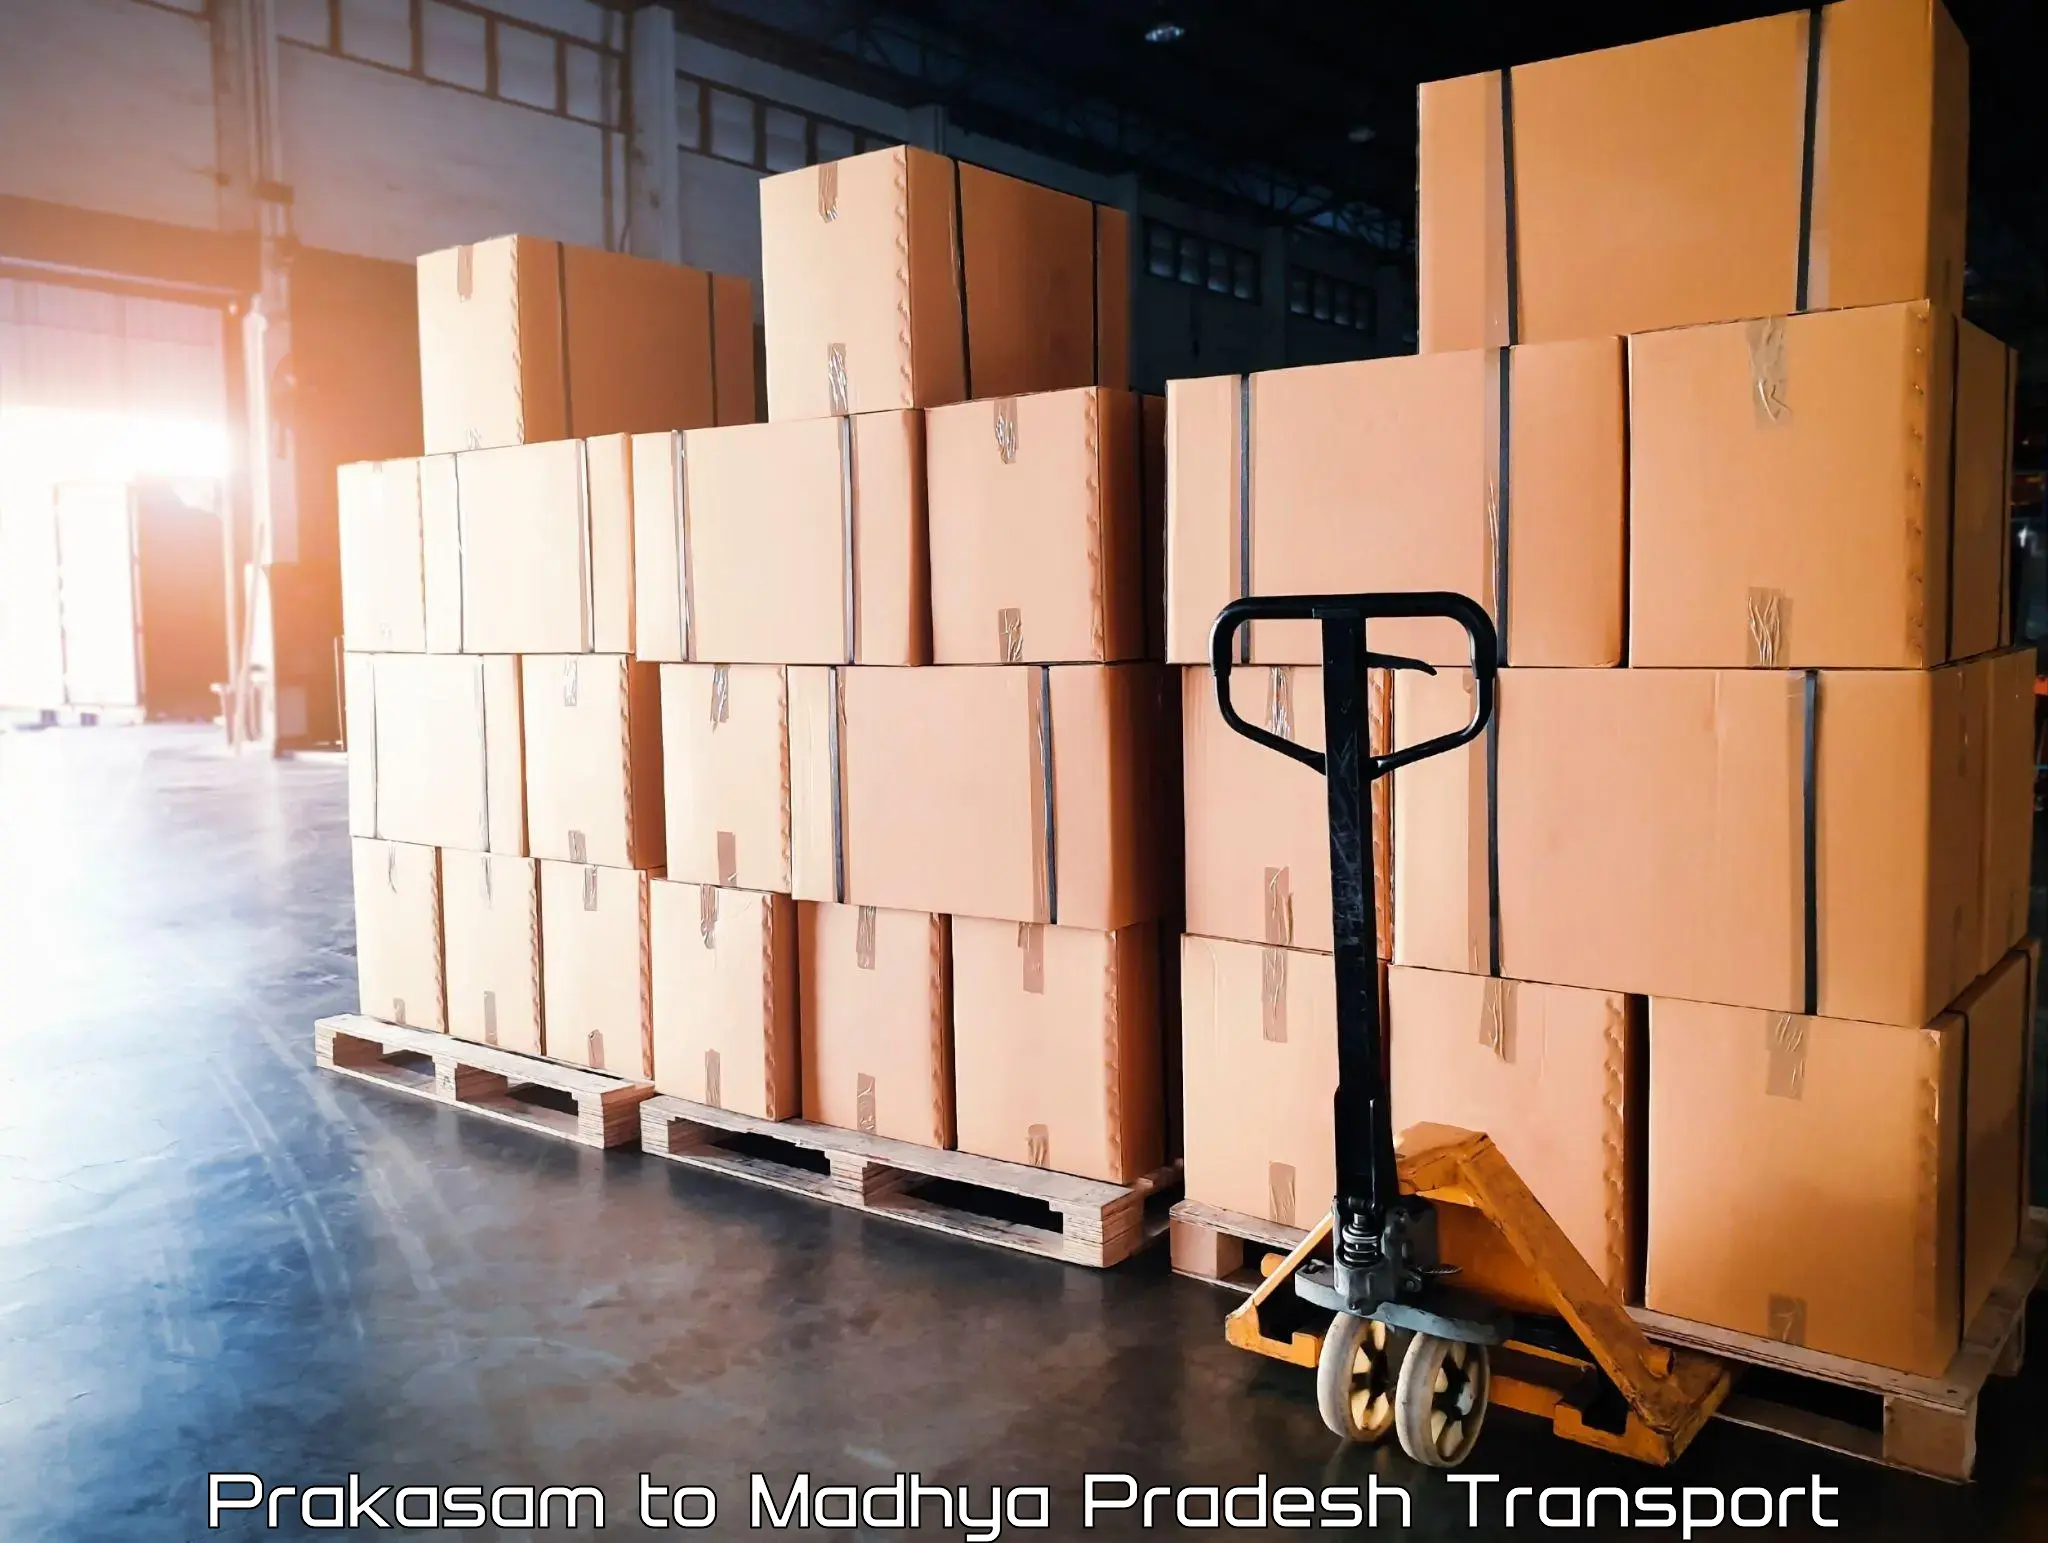 International cargo transportation services Prakasam to Rampur Baghelan